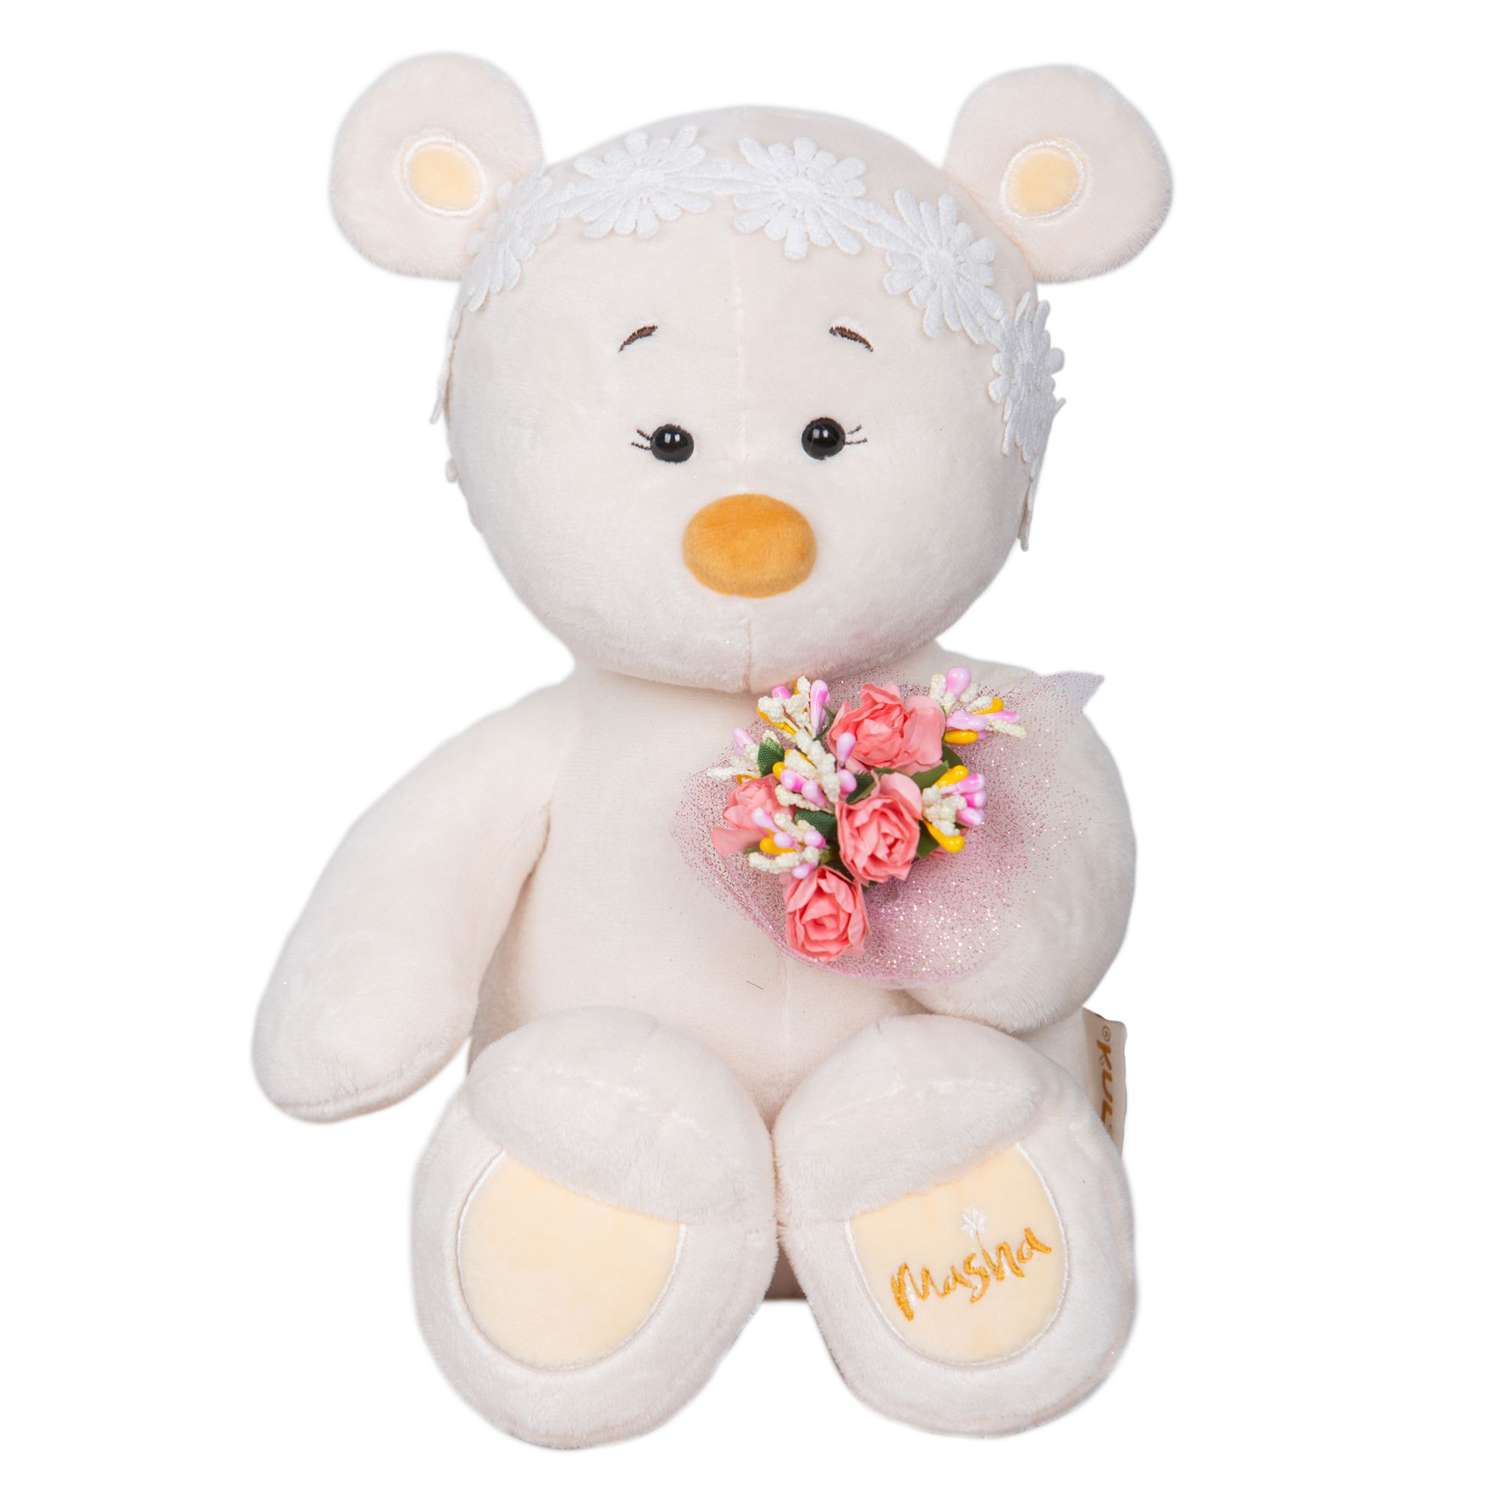 Мягкая игрушка KULT of toys плюшевый медведь в подарочной коробки для девочки masha с цветами 30 см - фото 1